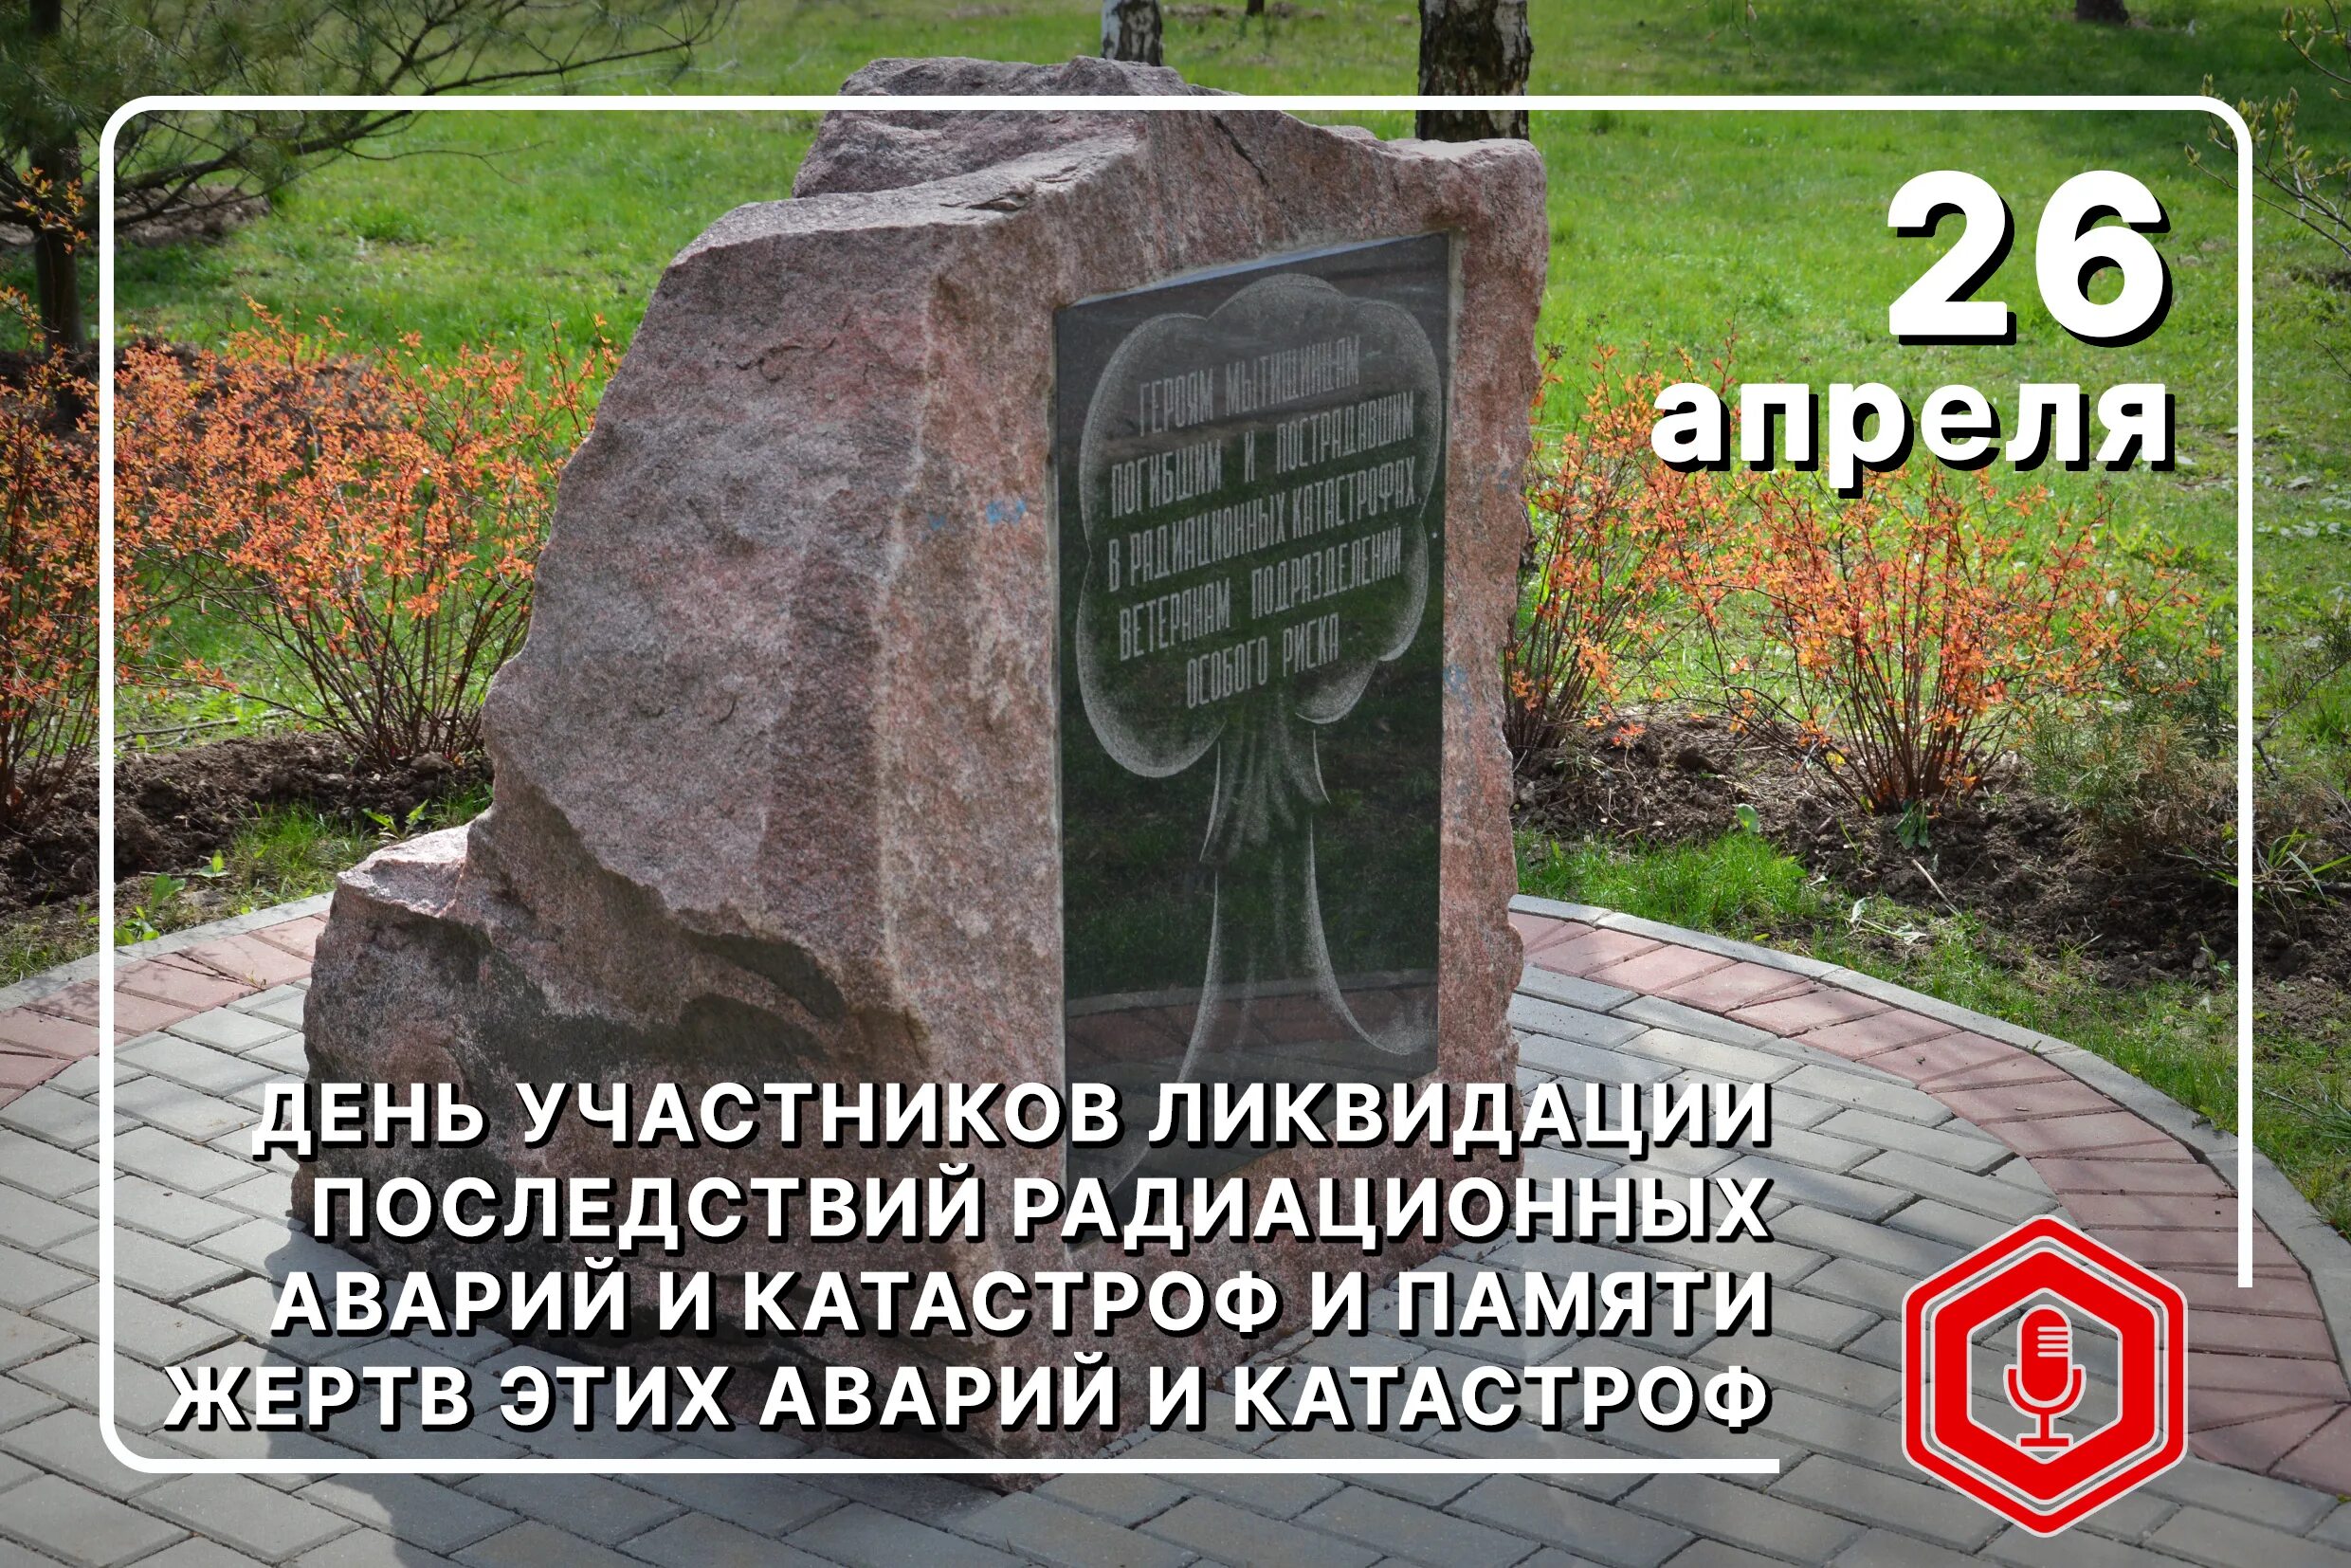 Дом 26 апреля. День памяти погибших в радиоактивных авариях и катастрофах. 26 Апреля день памяти погибших в радиационных авариях и катастрофах. Международный день памяти о Чернобыльской катастрофе. 26 Апреля Дата.